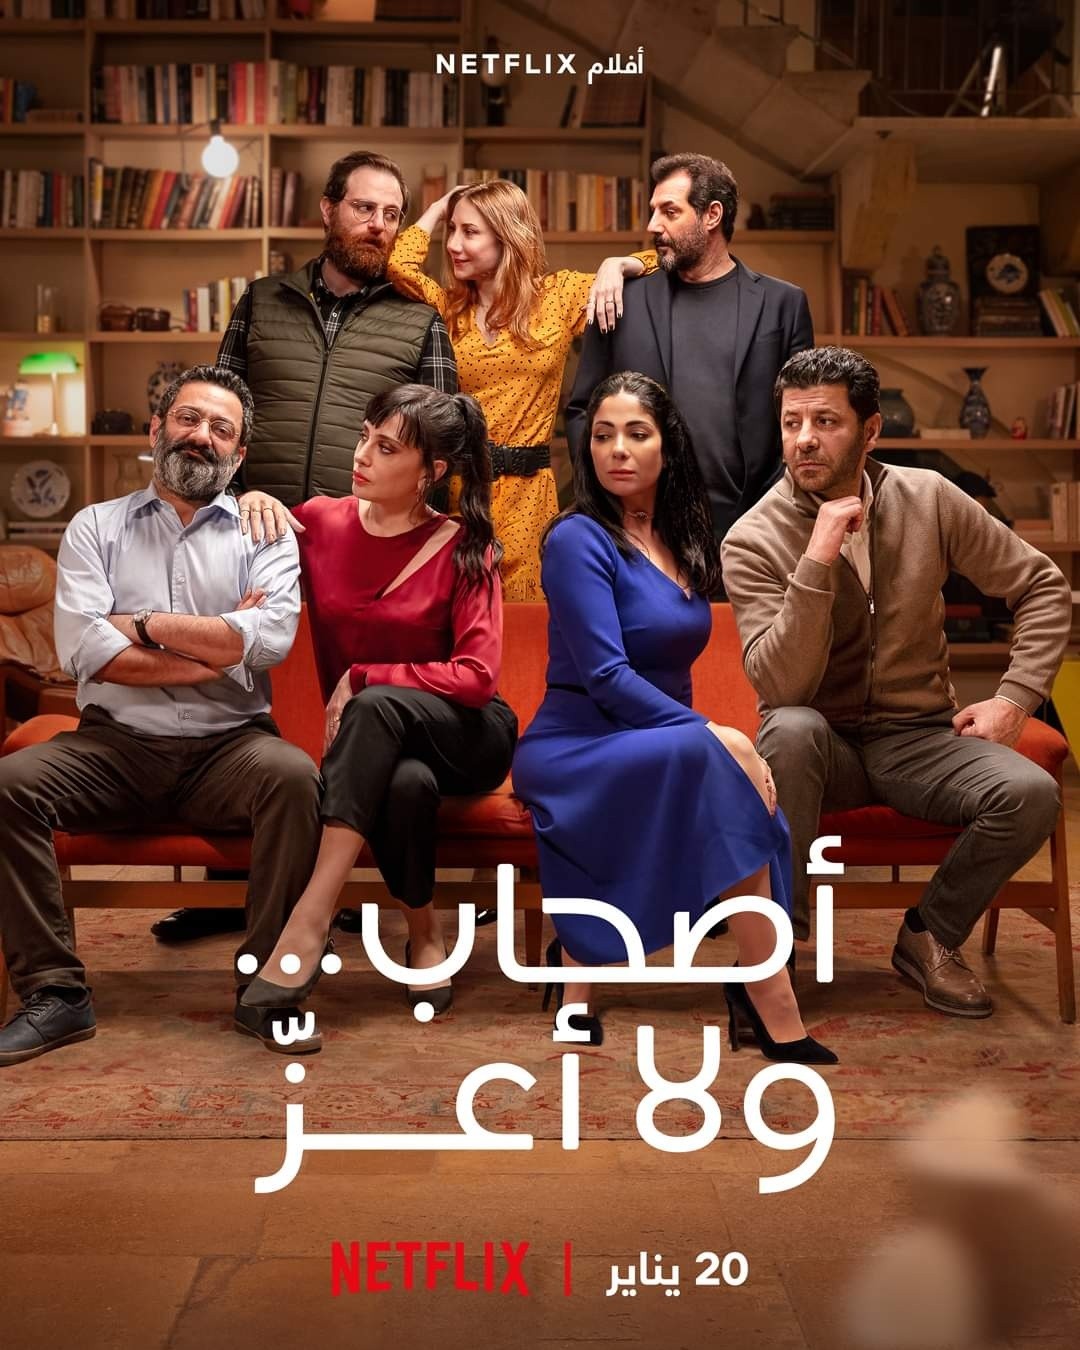 هذه تفاصيل أول فيلم عربي تنتجه « نيتفليكس » ويعرض في 190 دولة حول العالم